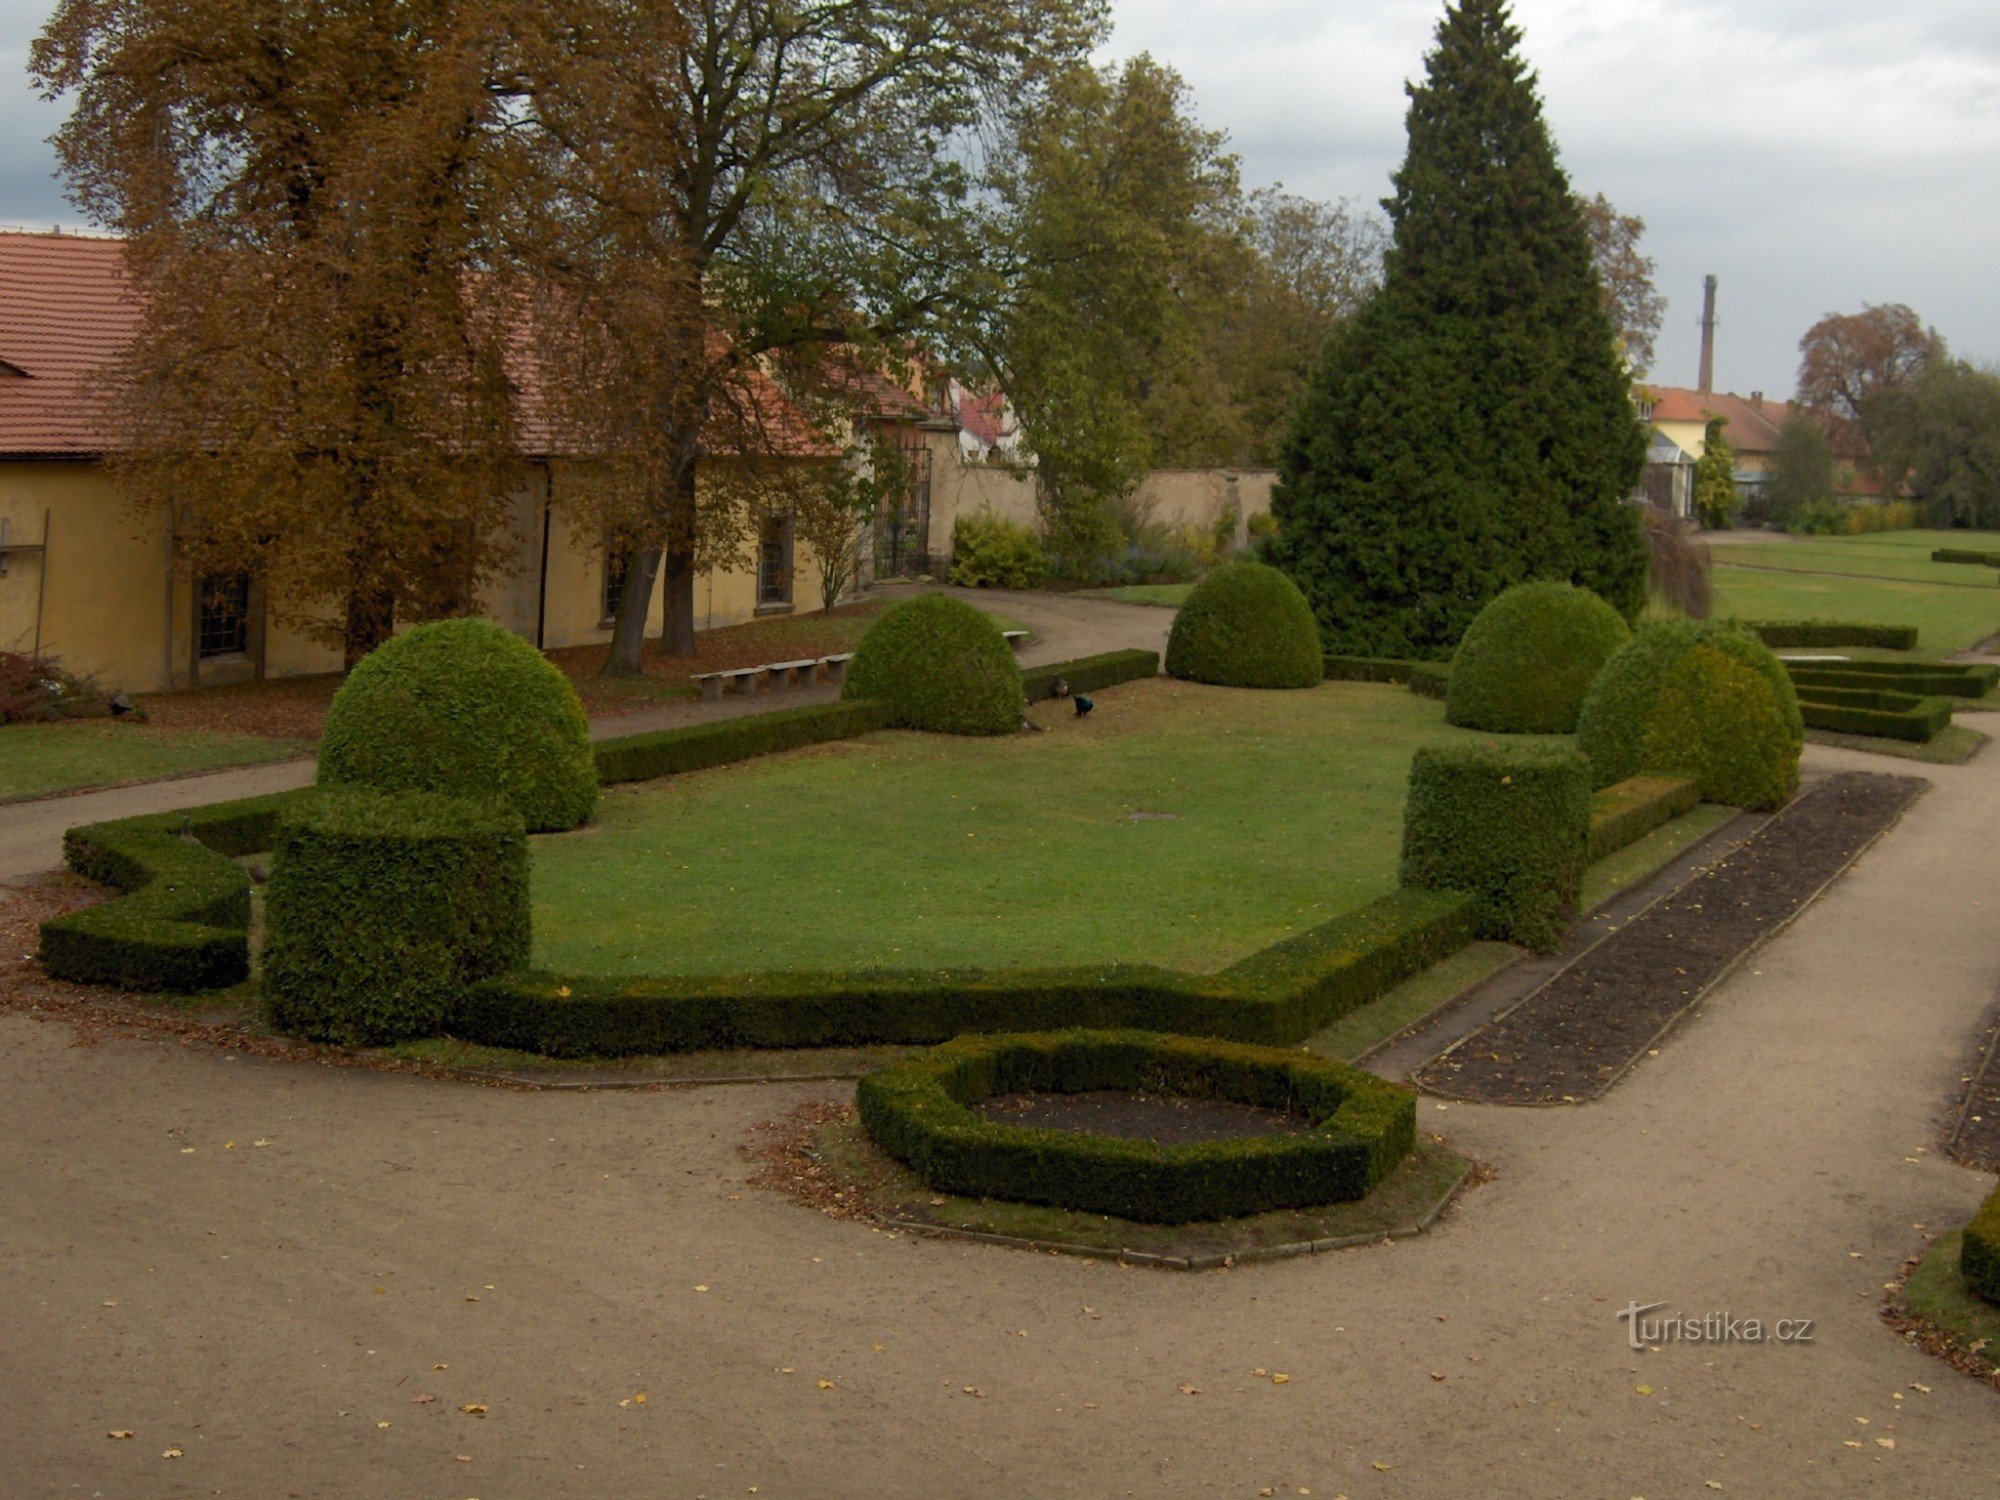 Jardín del castillo de otoño de Libochovice